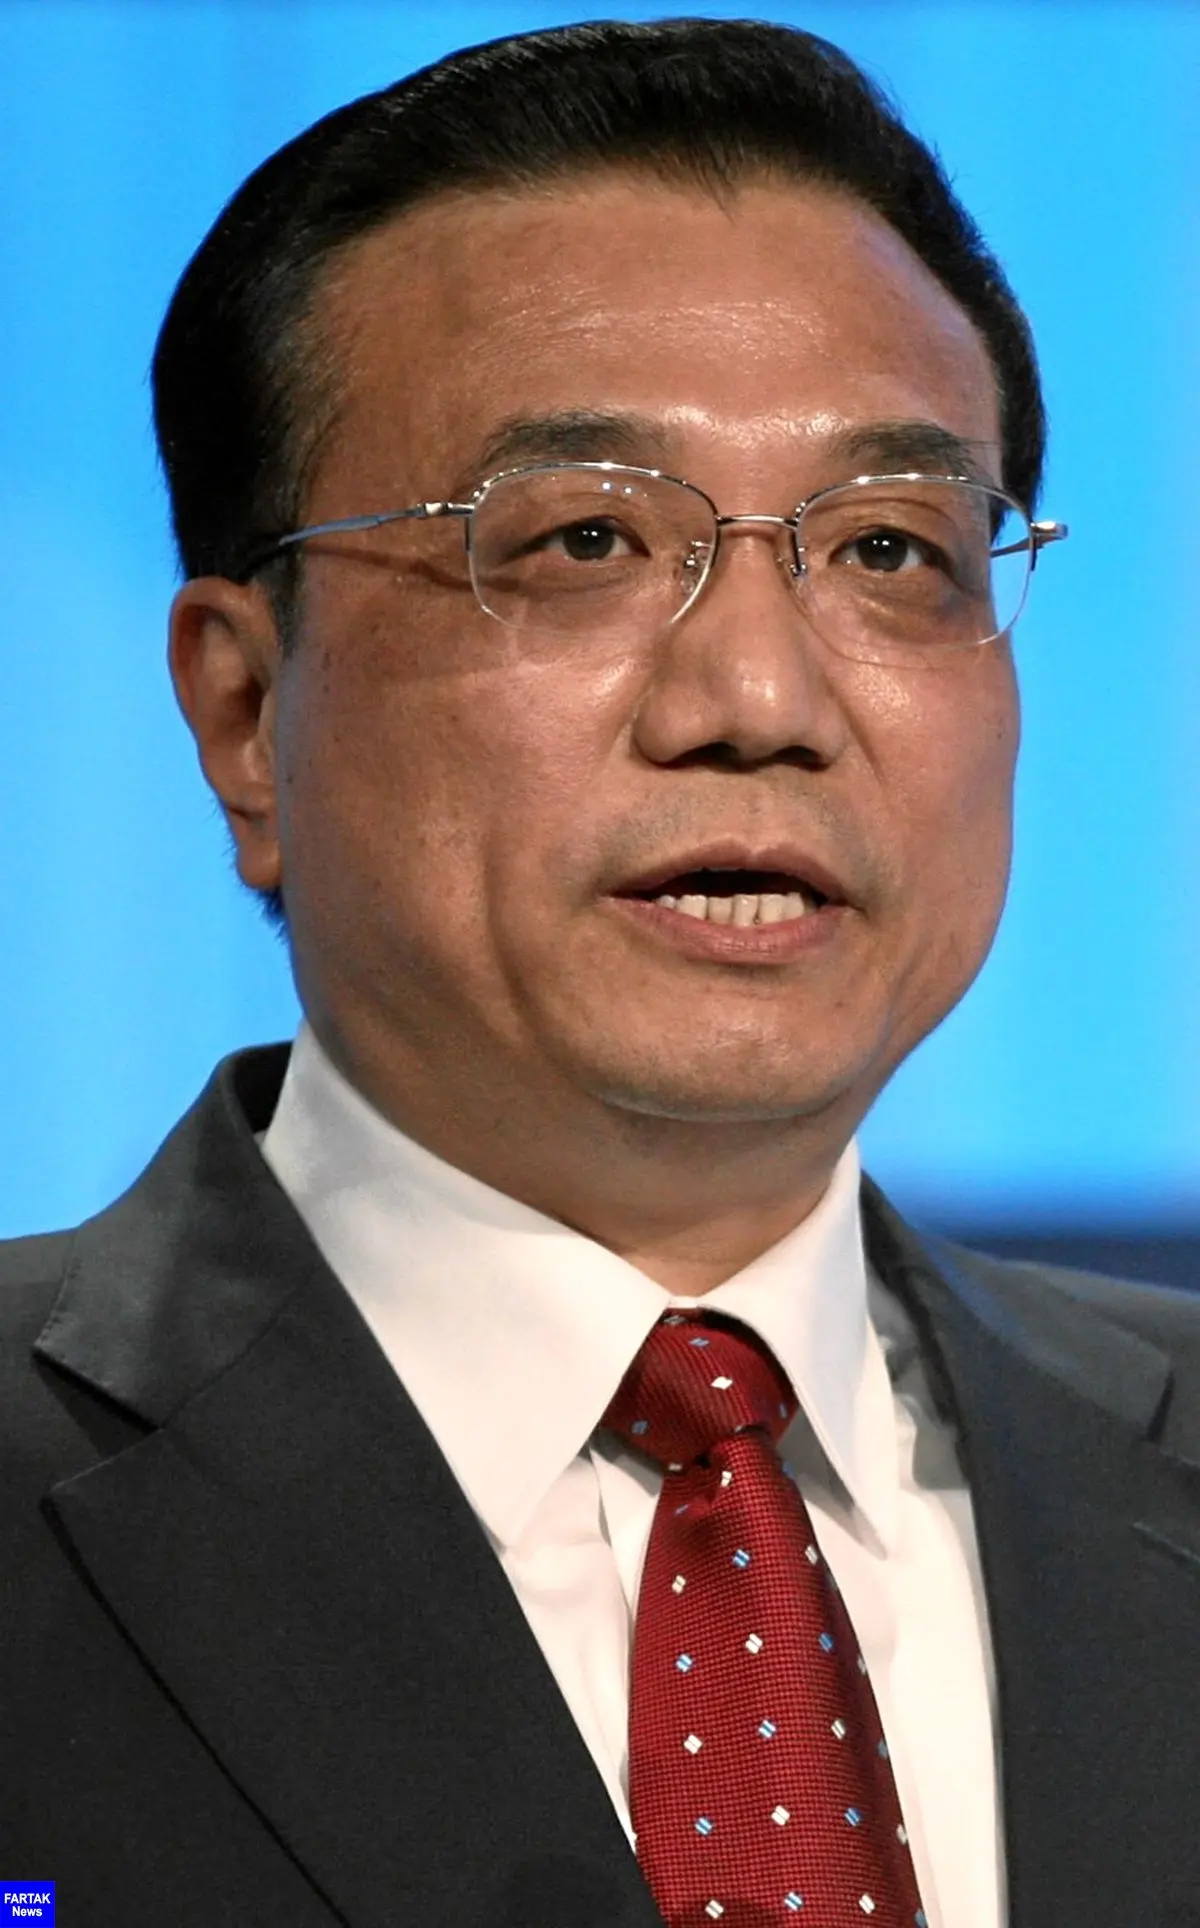 نخست وزیر چین: برای رسیدن به اهداف اقتصادی باید سخت تلاش کنیم
